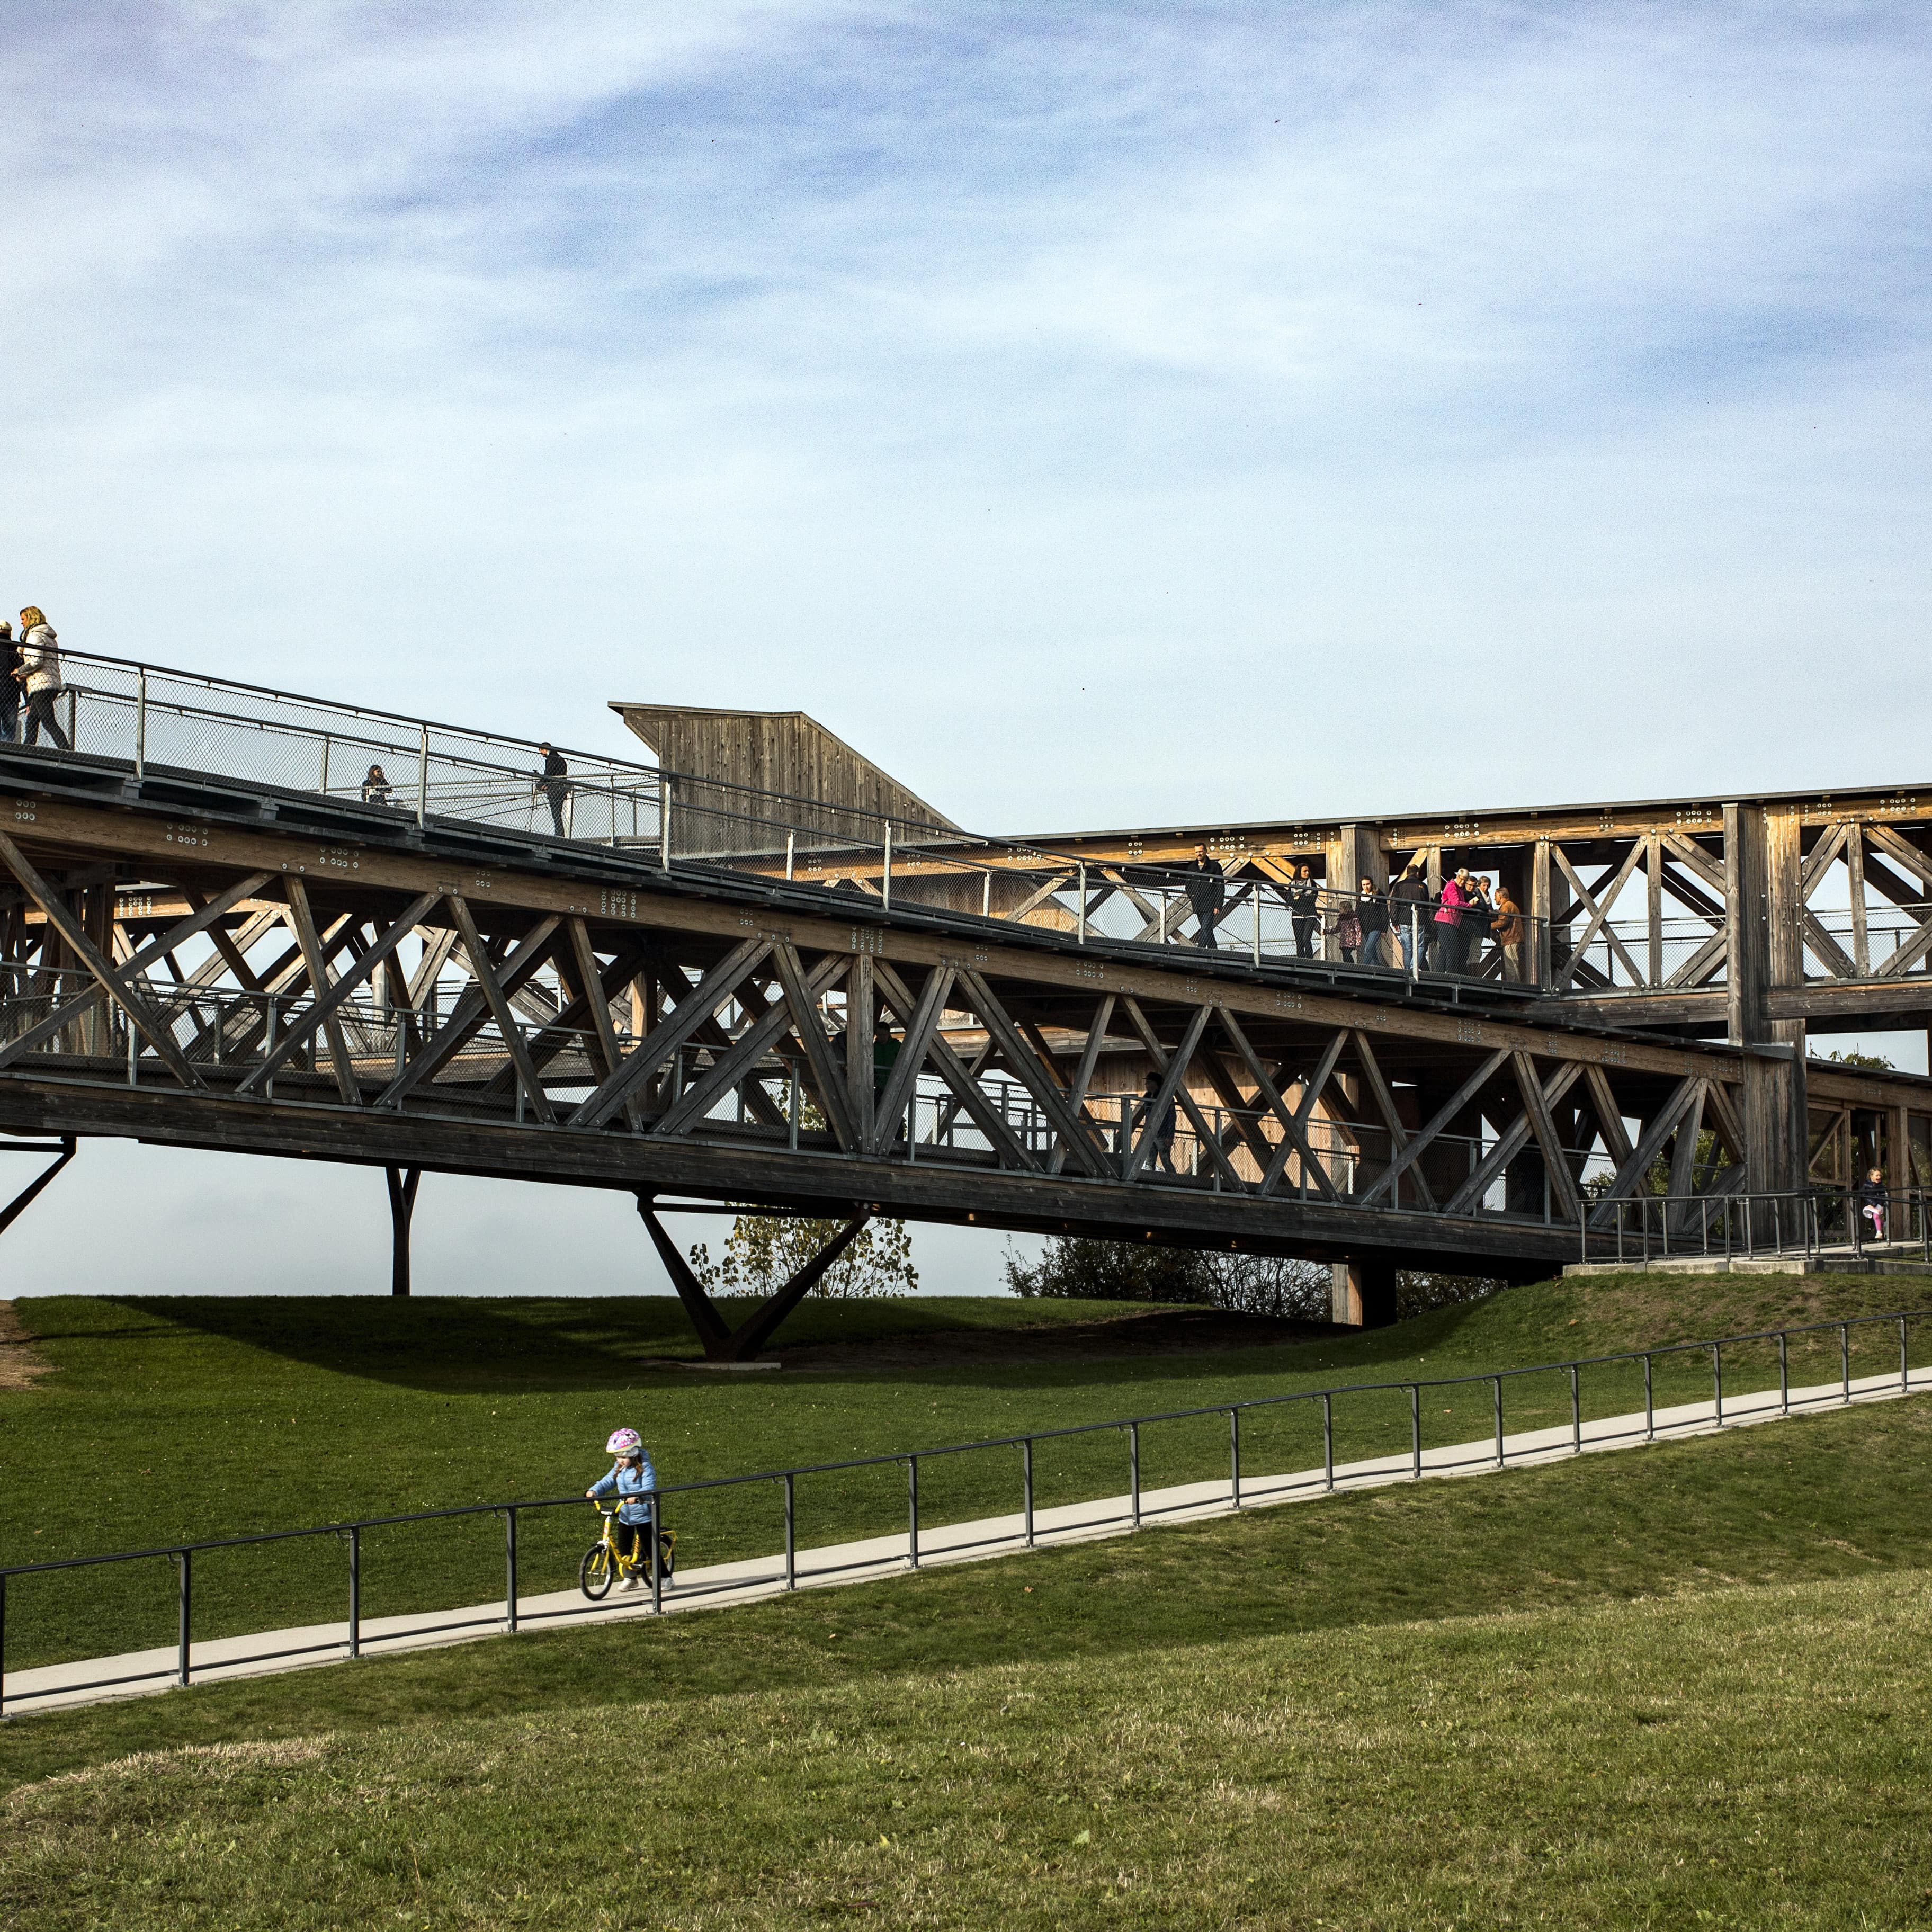 Erhöhte Aussichtsplattform im Grünen in Koblenz, ein kleines Kind mit Laufrad fährt den Weg hinunter.